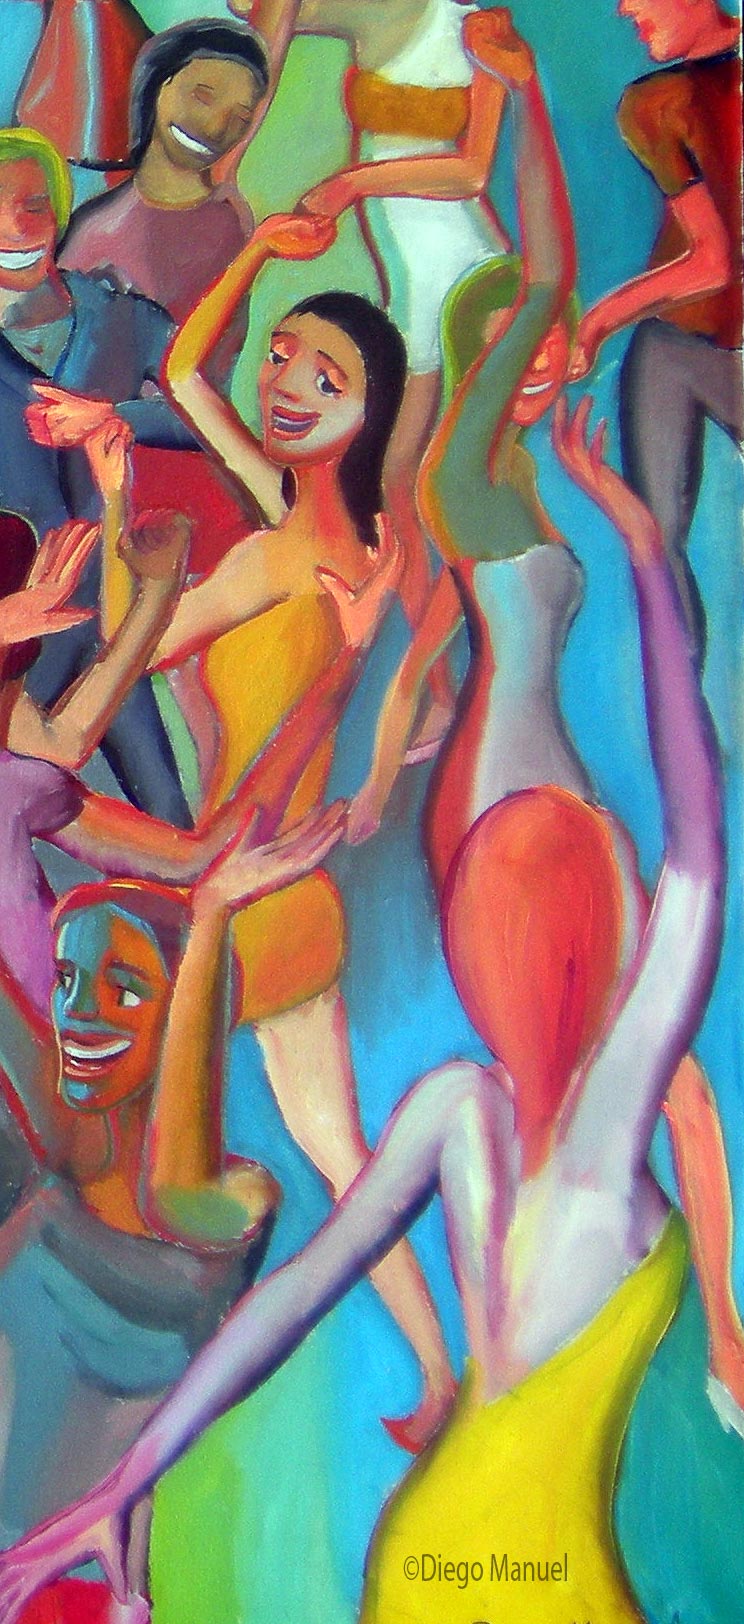 Cuadro del artista Diego Manuel. El baile 7, acrylic on canvas, 95 x 130 cm,2012 